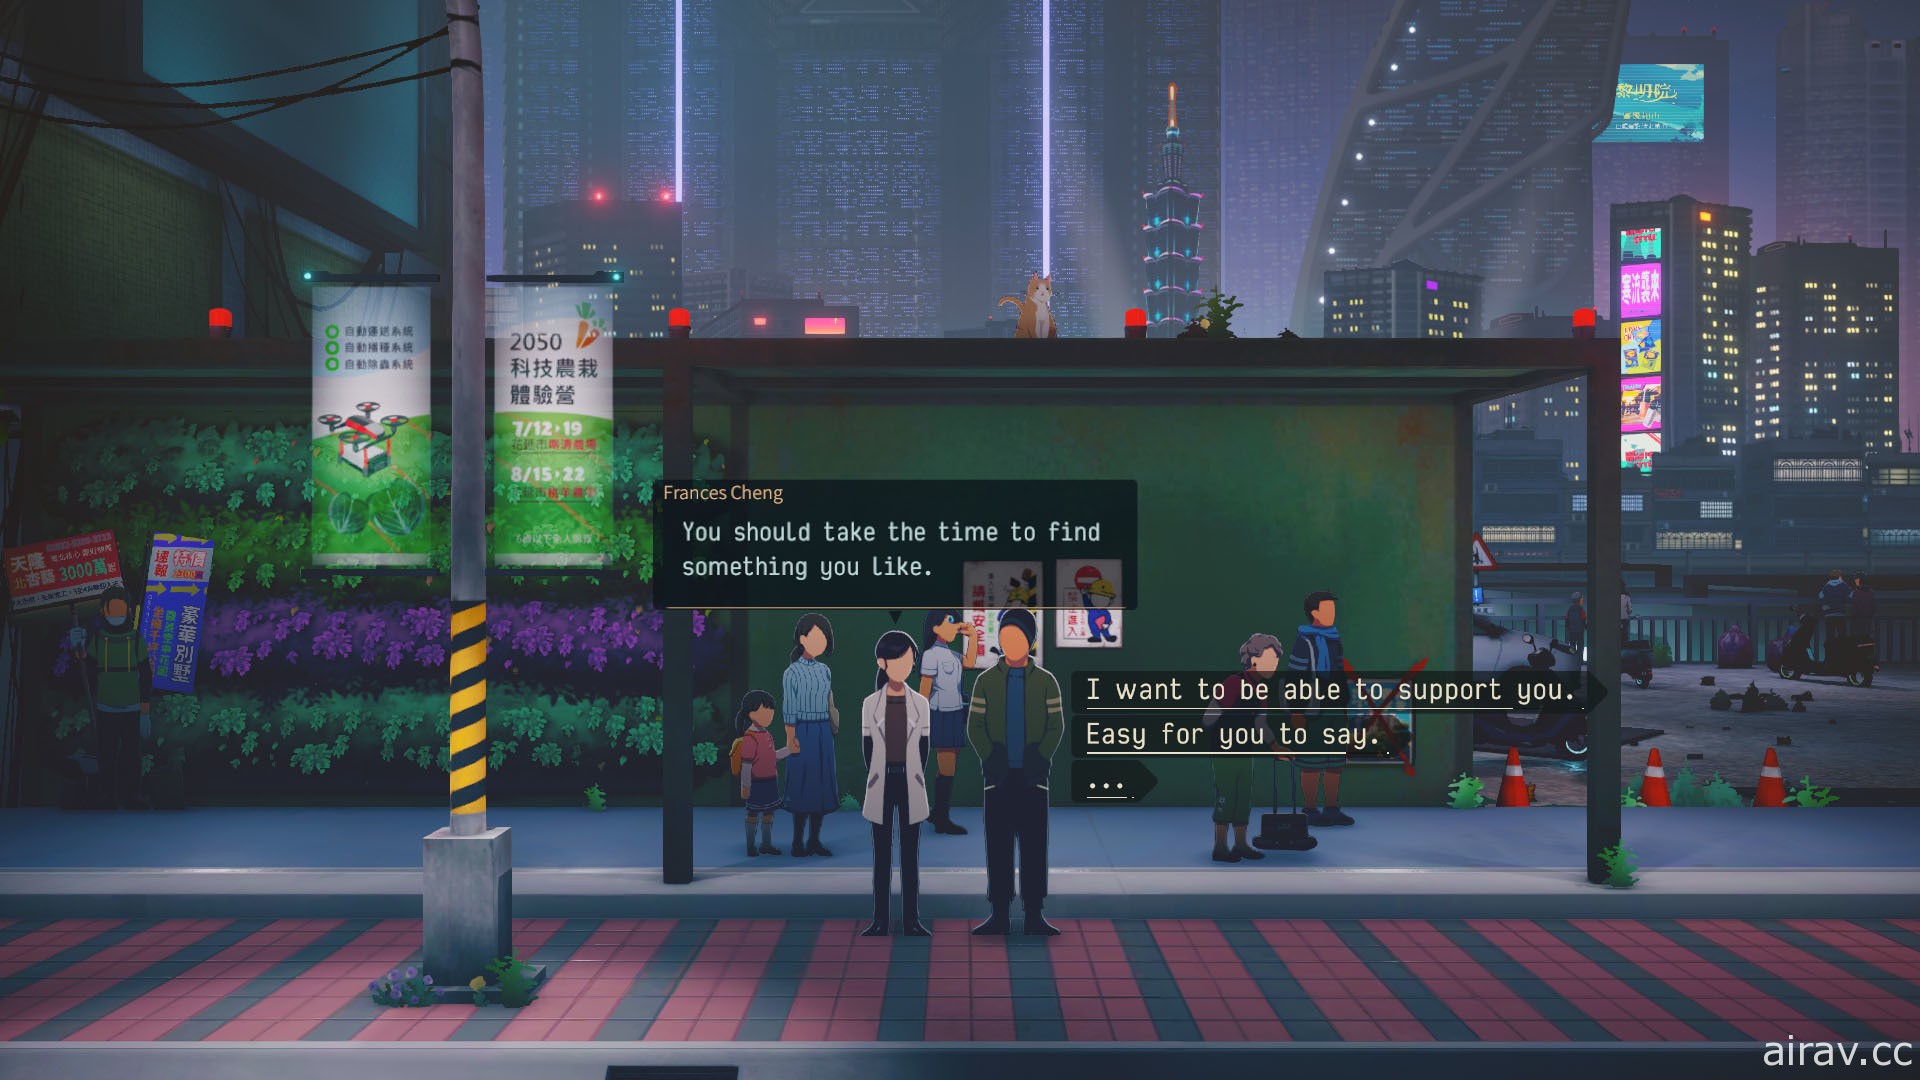 【E3 21】台湾题材 Cyberpunk 冒险游戏《沉没意志》曝光首部前导预告片